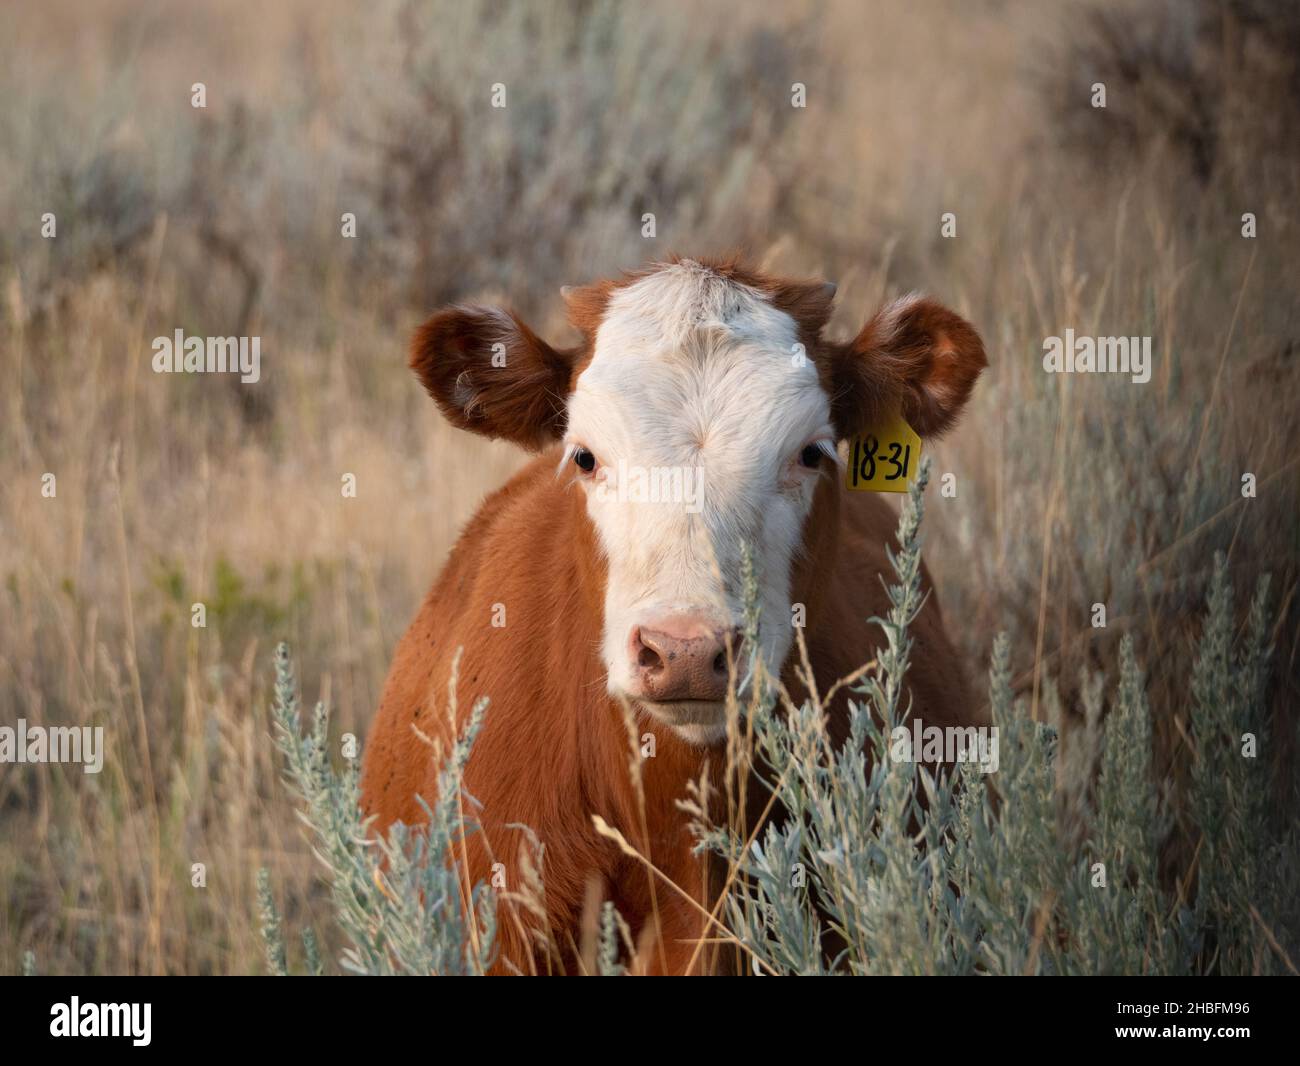 Gros plan d'une vache Simental à fourrure brun rougeâtre et visage blanc regardant la caméra depuis l'arrière de la brosse à dents.Photographié avec une faible profondeur de champ. Banque D'Images